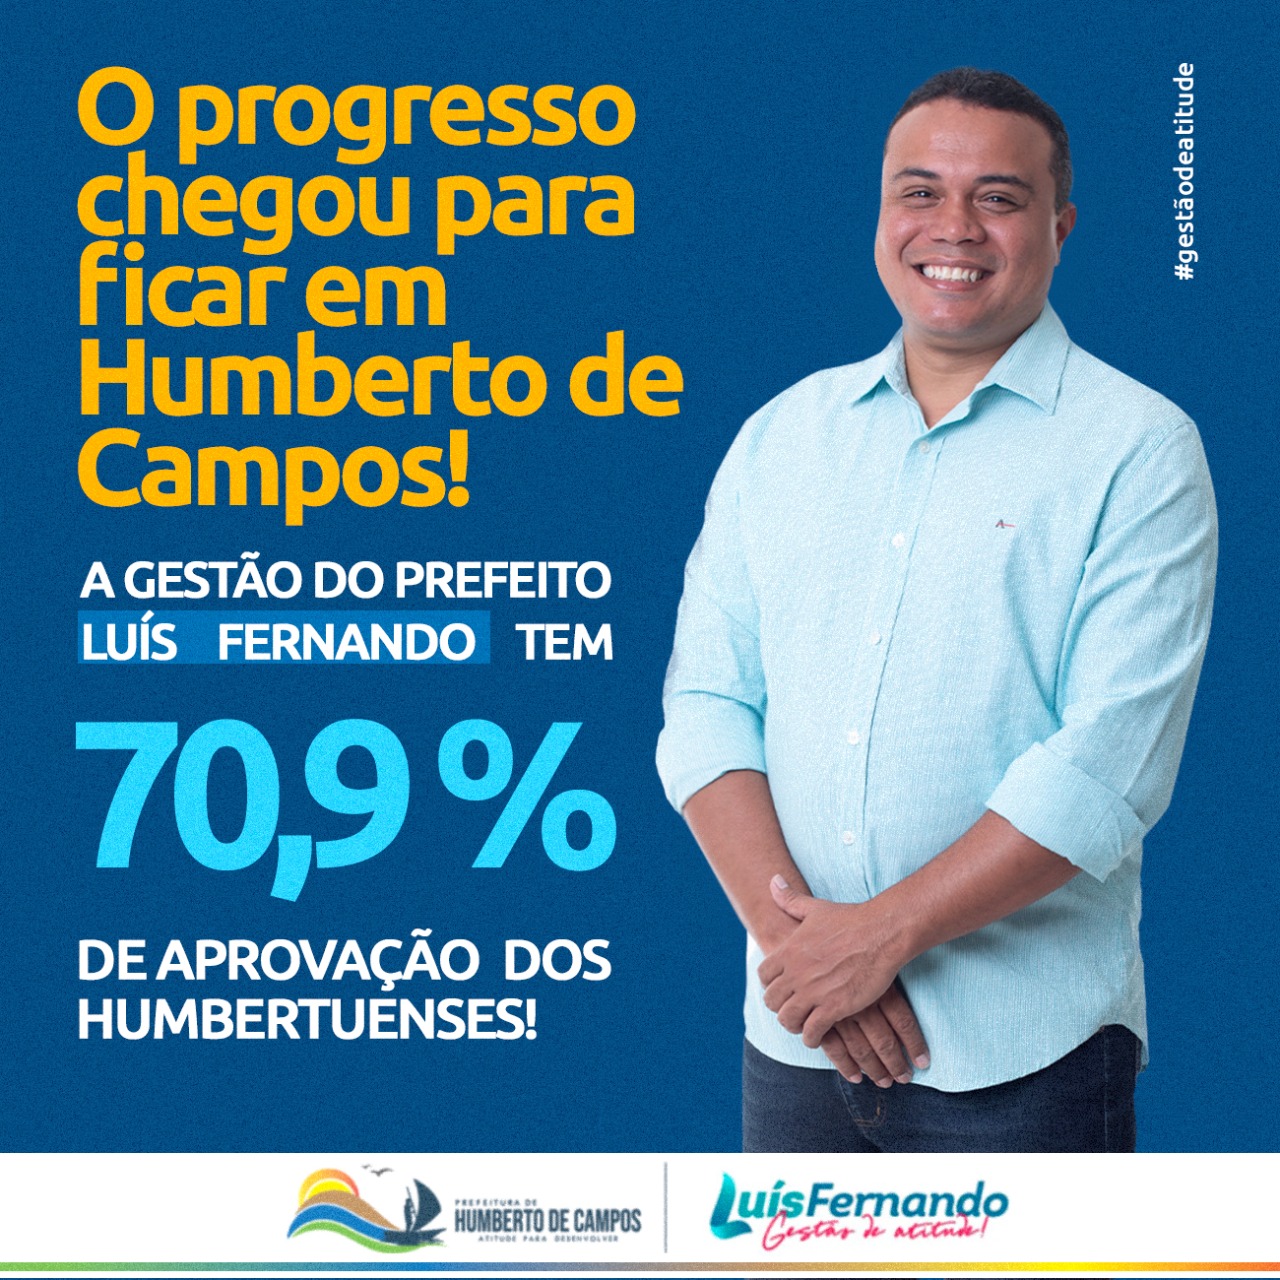 Gestão do prefeito Luis Fernando recebe aprovação de 70,9% dos humbertuenses, revela pesquisa do instituto Prever